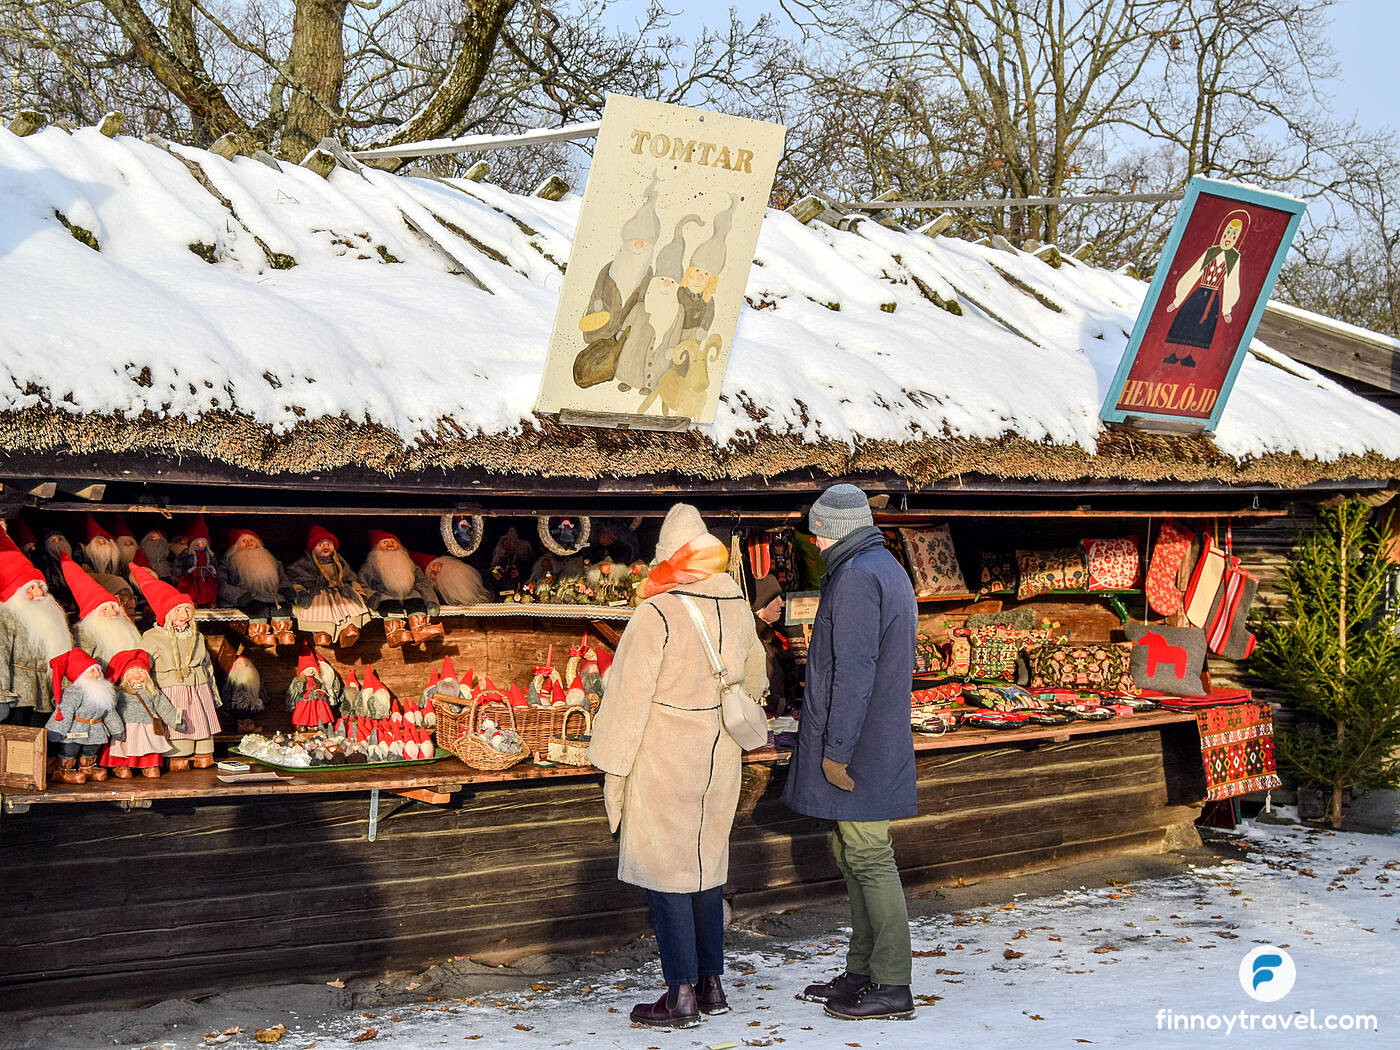 A handicraft Christmas market stall at the Skansen